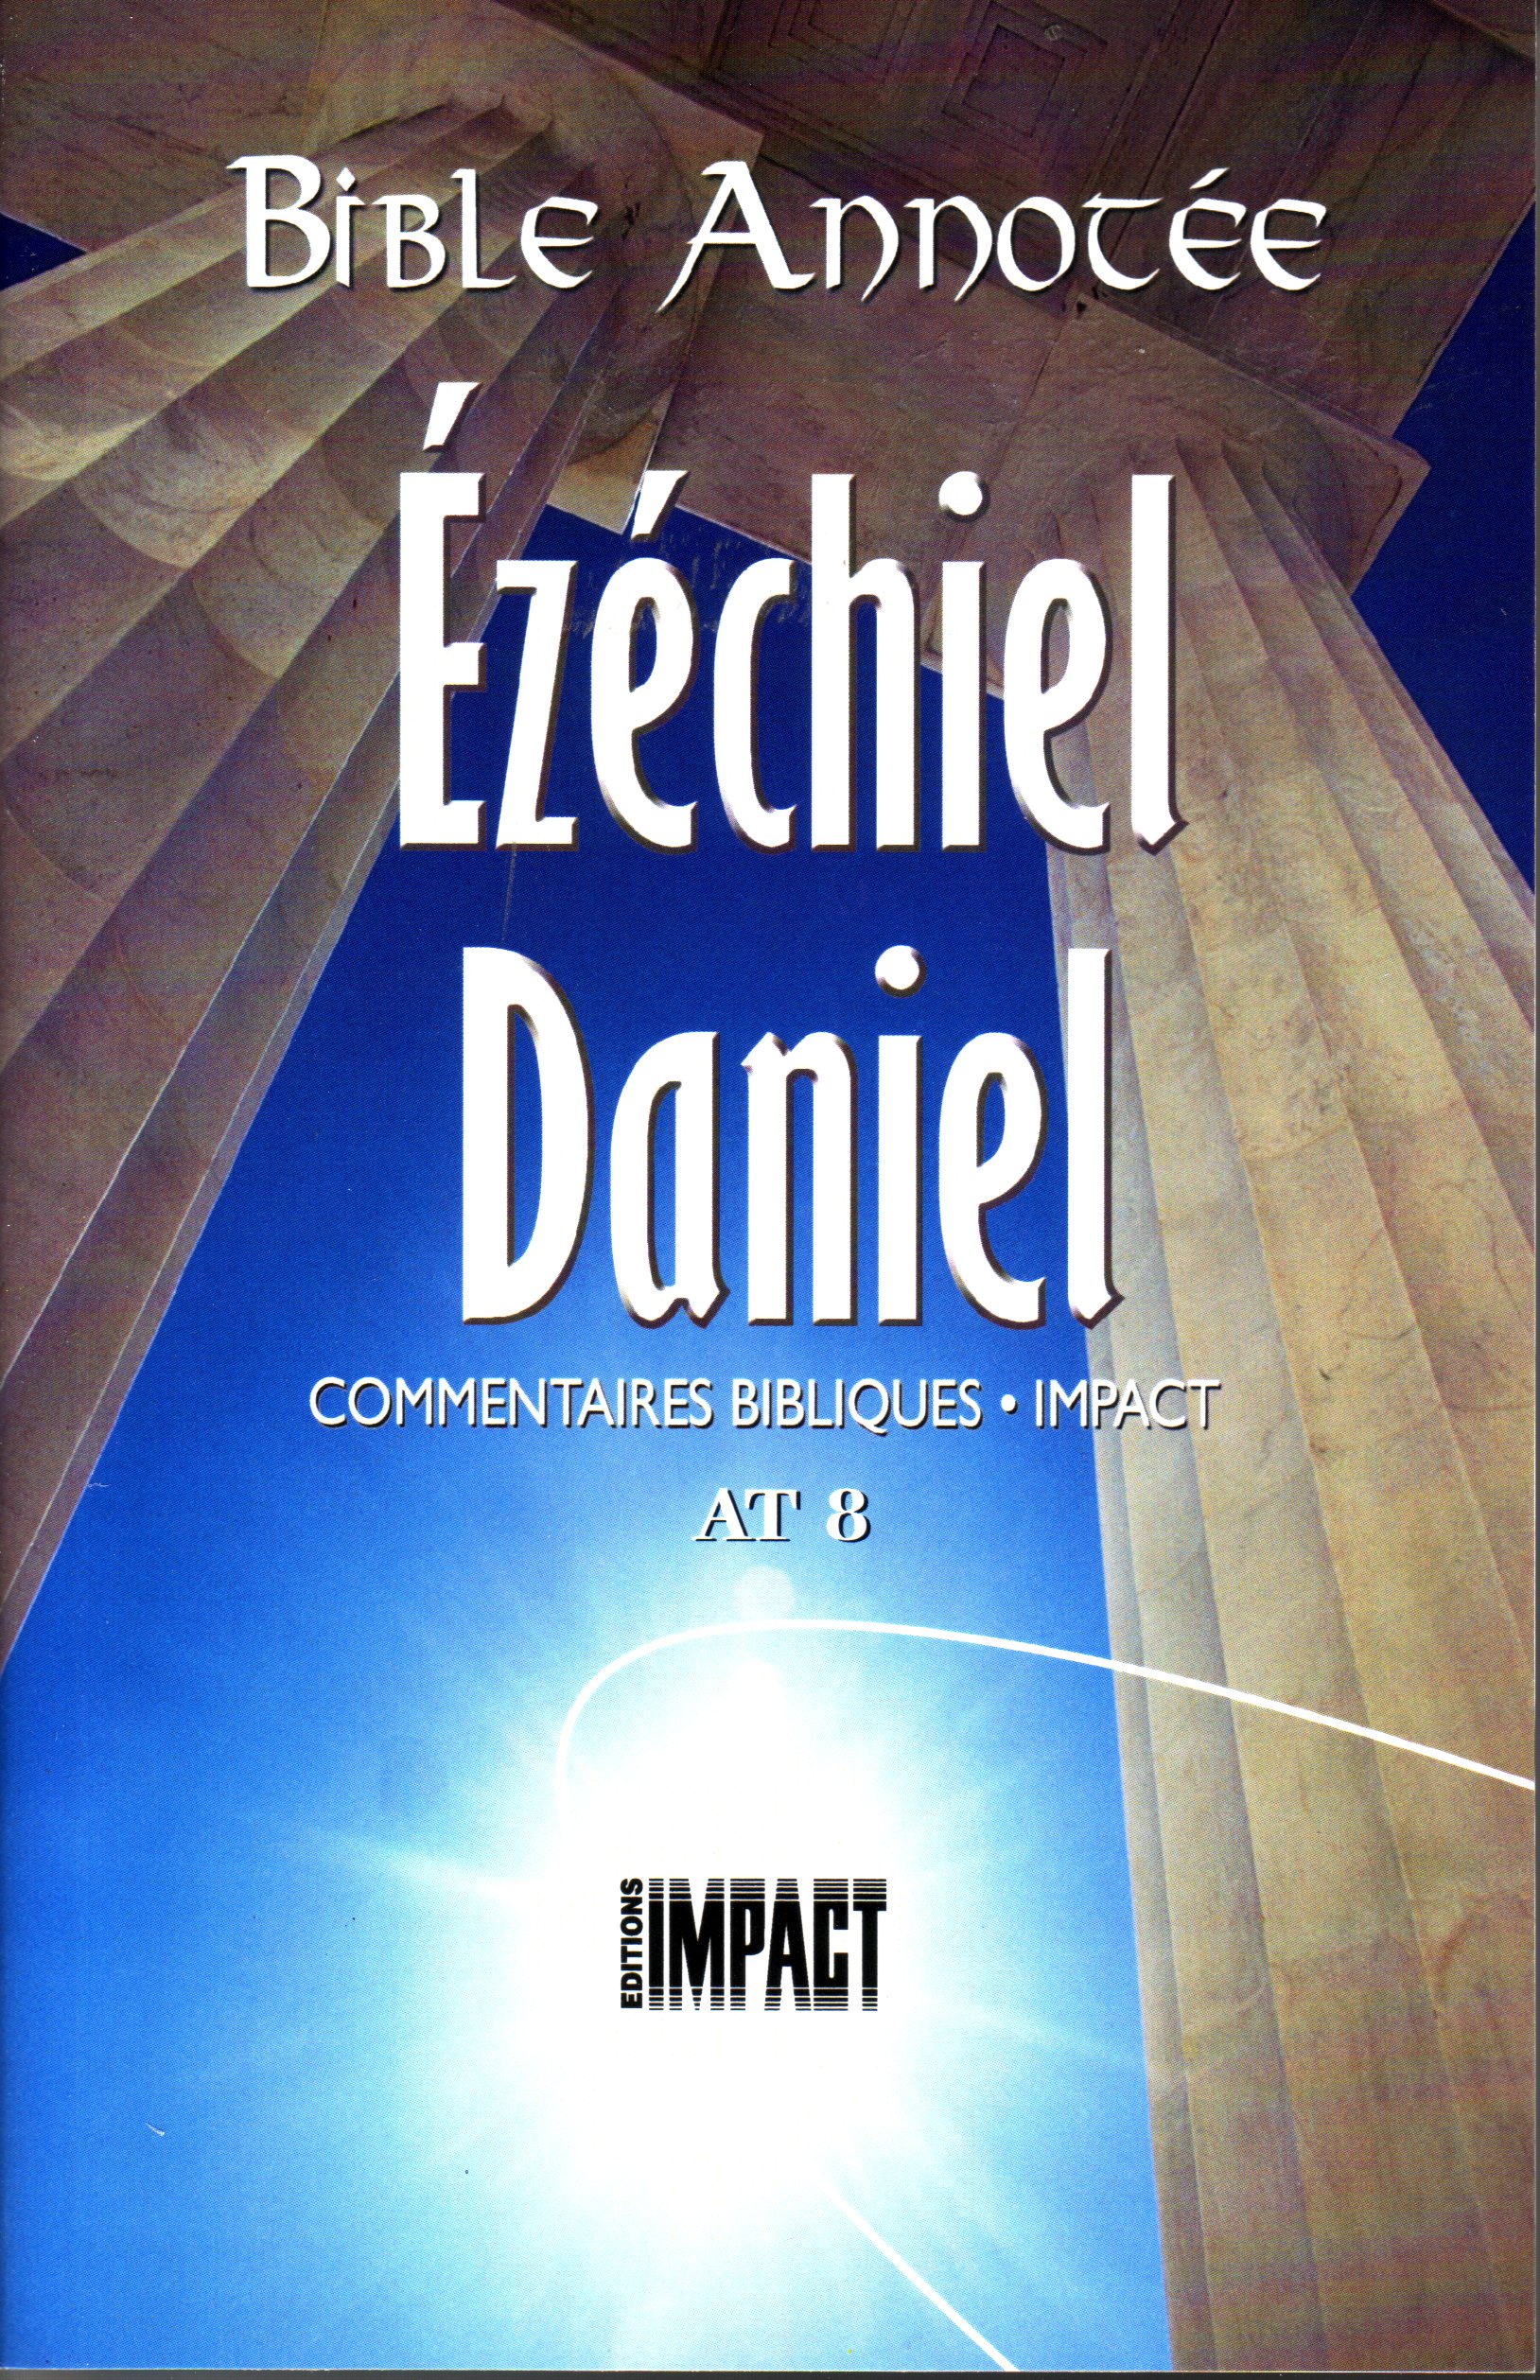 Bible Annotée, Ézéchiel Daniel (La) - Commentaires bibliques Impact AT 8